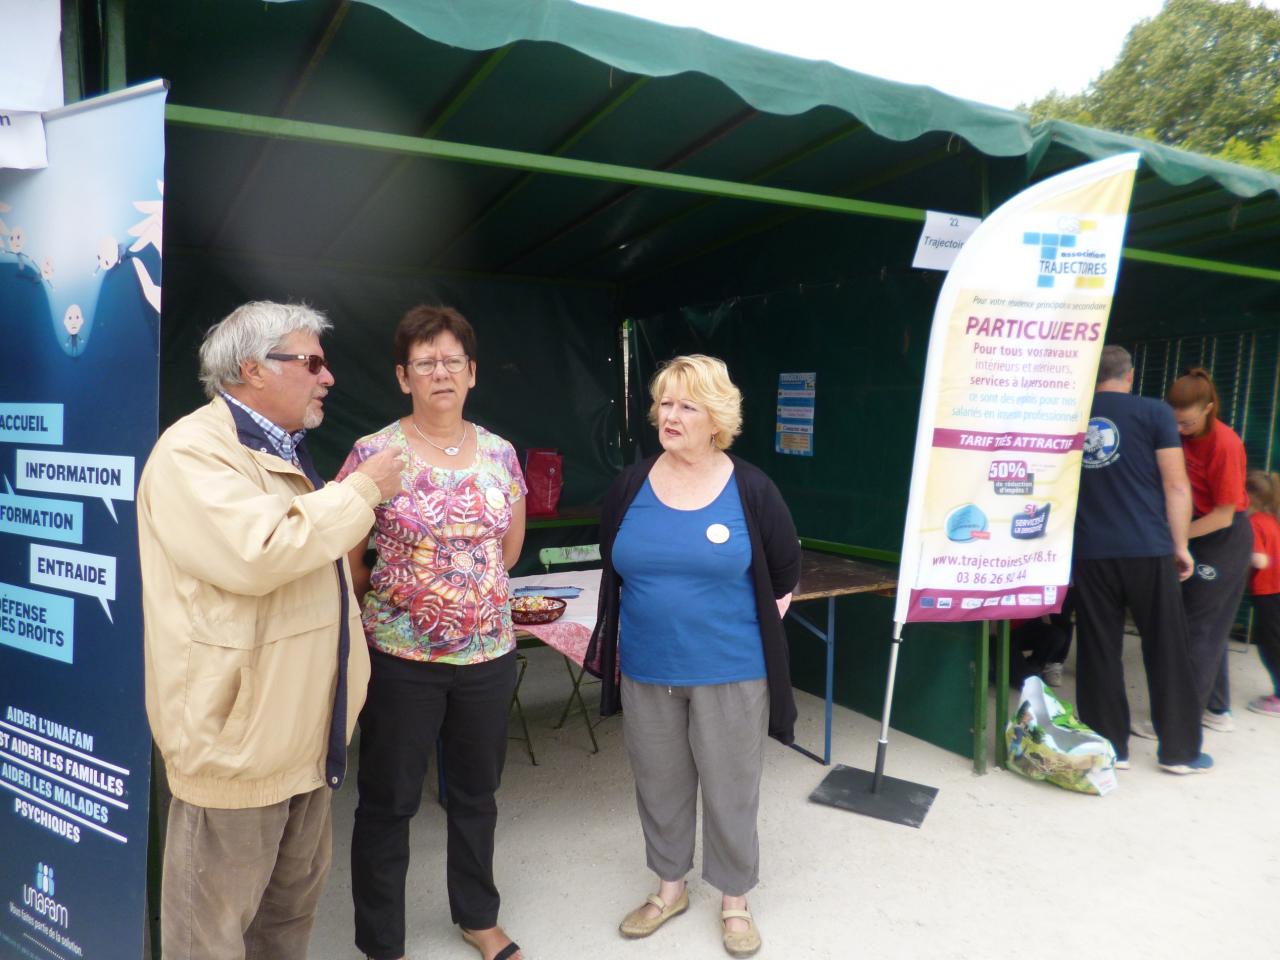 Fête des associations juin 2015 à Cosne Cours sur Loire